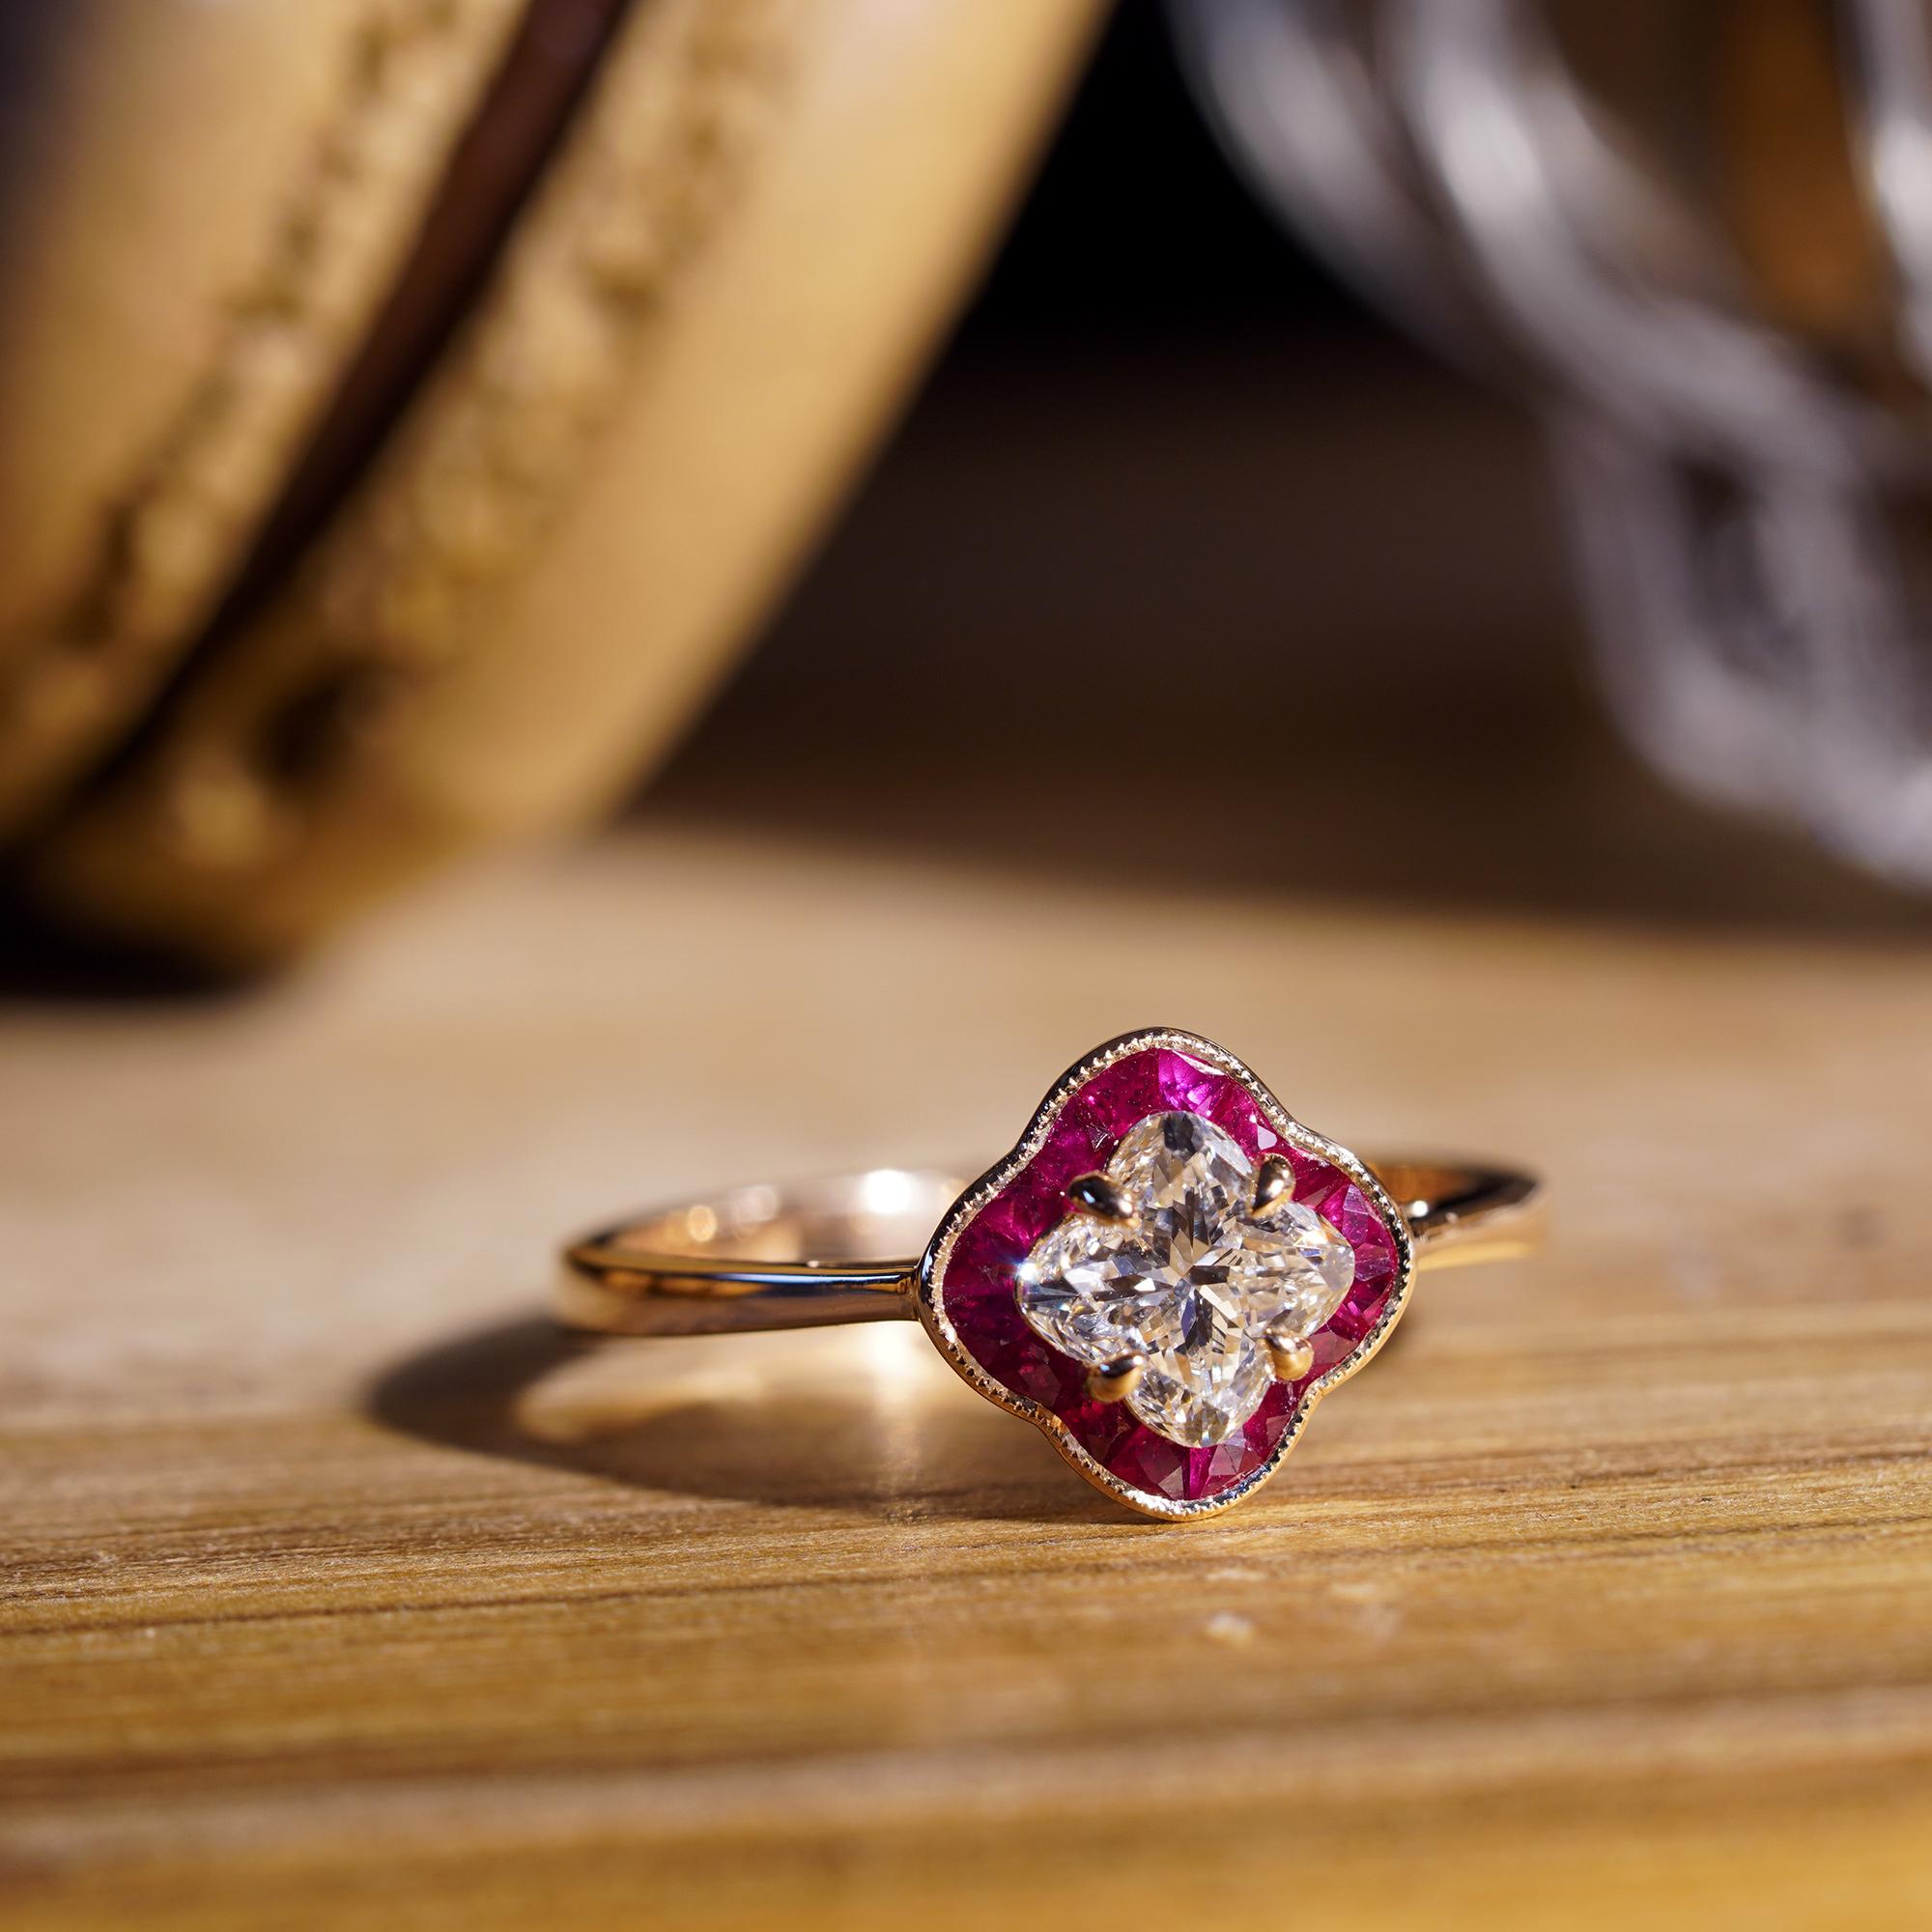 Cette délicate bague de fiançailles à halo de diamants et de rubis présente un diamant certifié de 0,07 carat de taille lily en serti clos entouré de rubis de taille française. Cette bague est un choix classique avec une touche de modernité ! Si